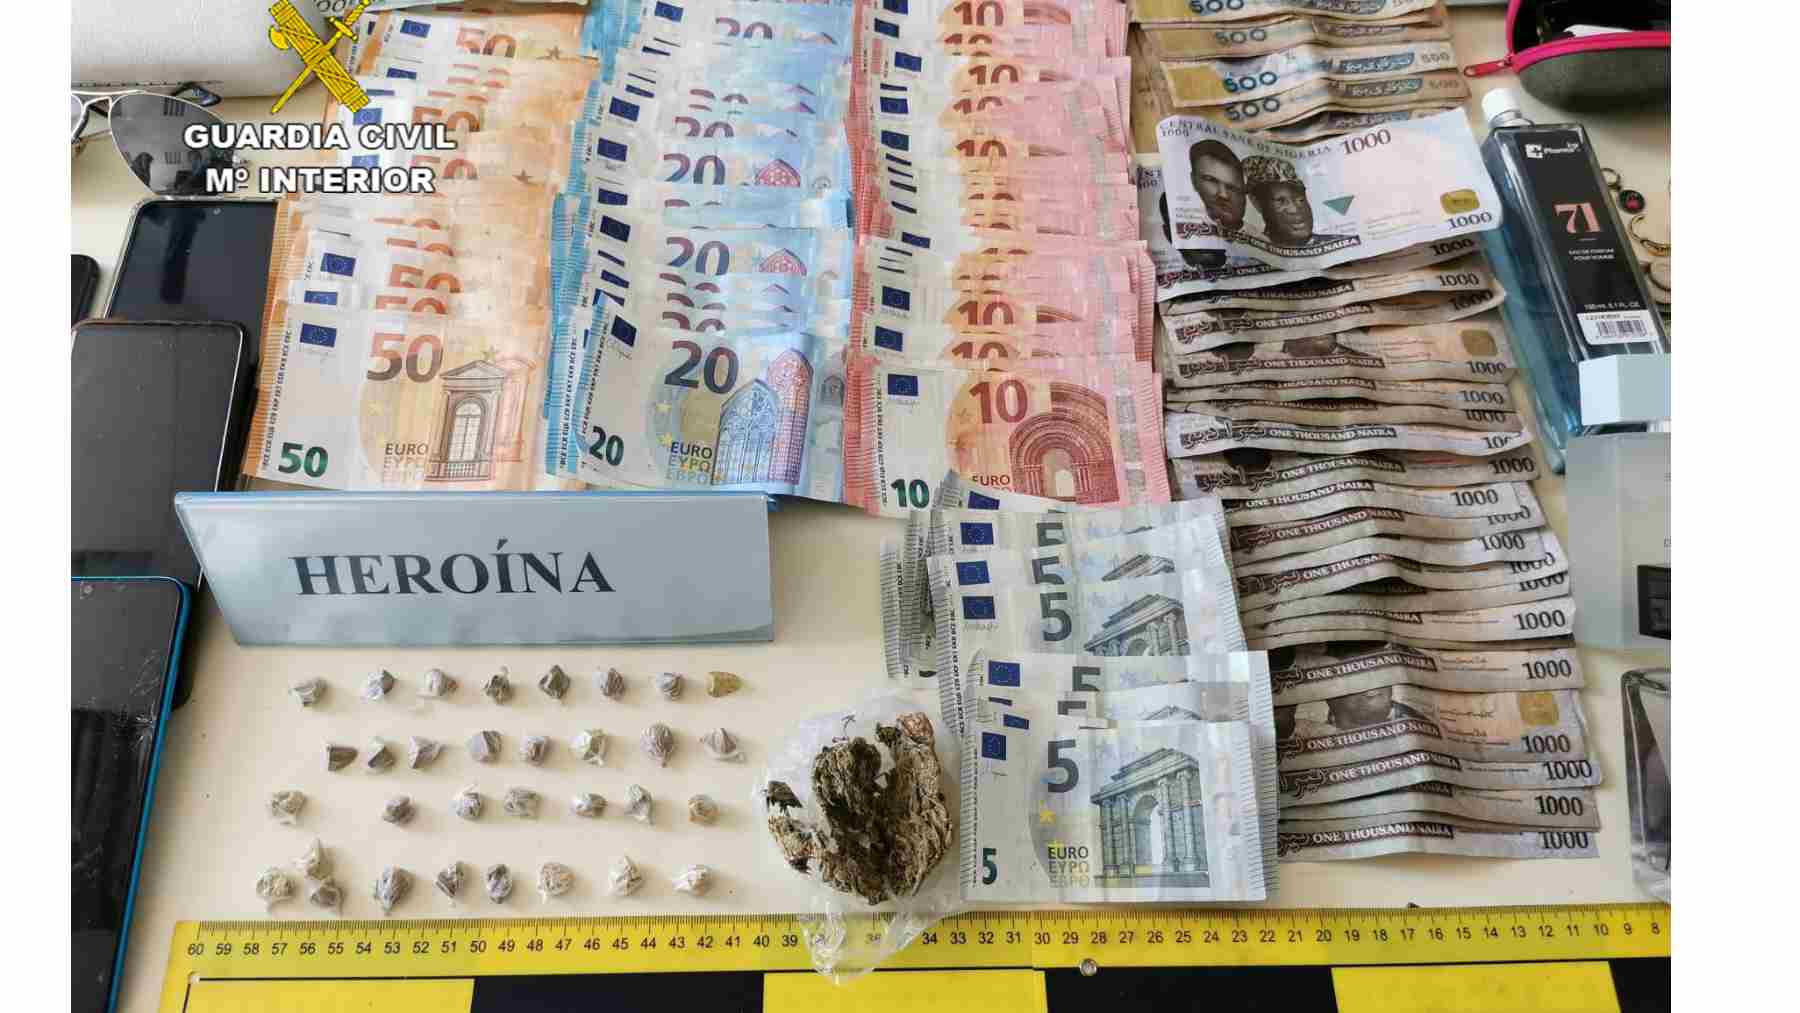 Dosis de heroína, dinero en efectivo y objetos intervenidos al detenido. GUARDIA CIVIL